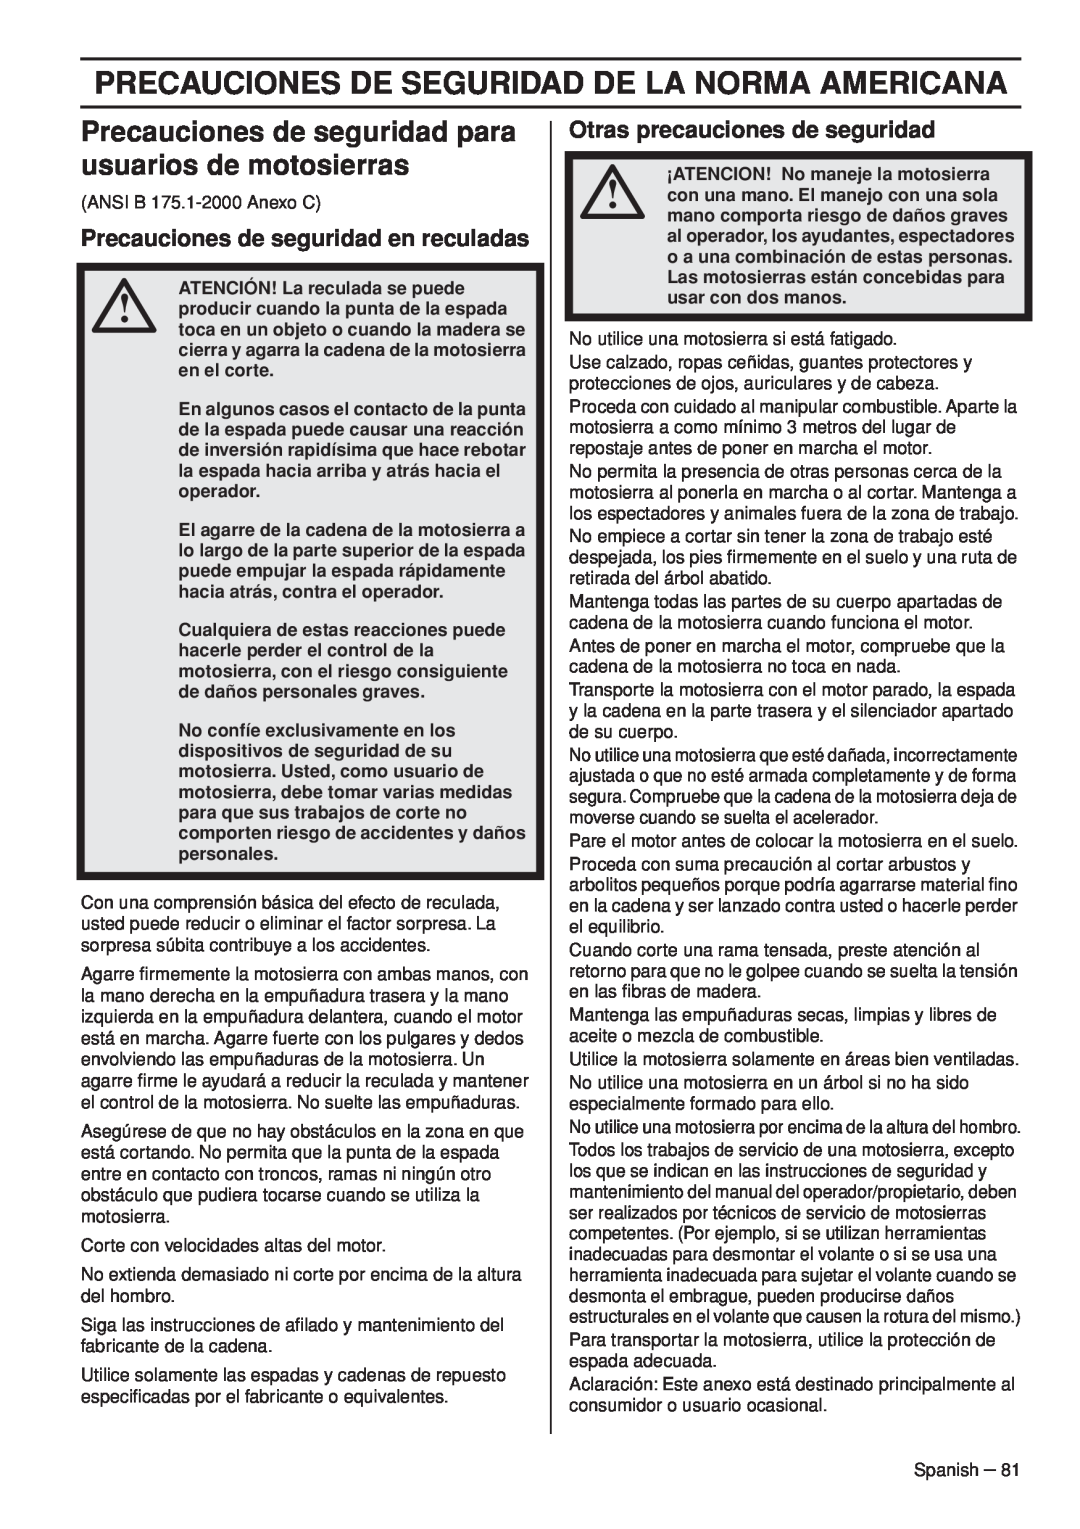 Husqvarna 445e TrioBrake manual Precauciones De Seguridad De La Norma Americana, Precauciones de seguridad en reculadas 